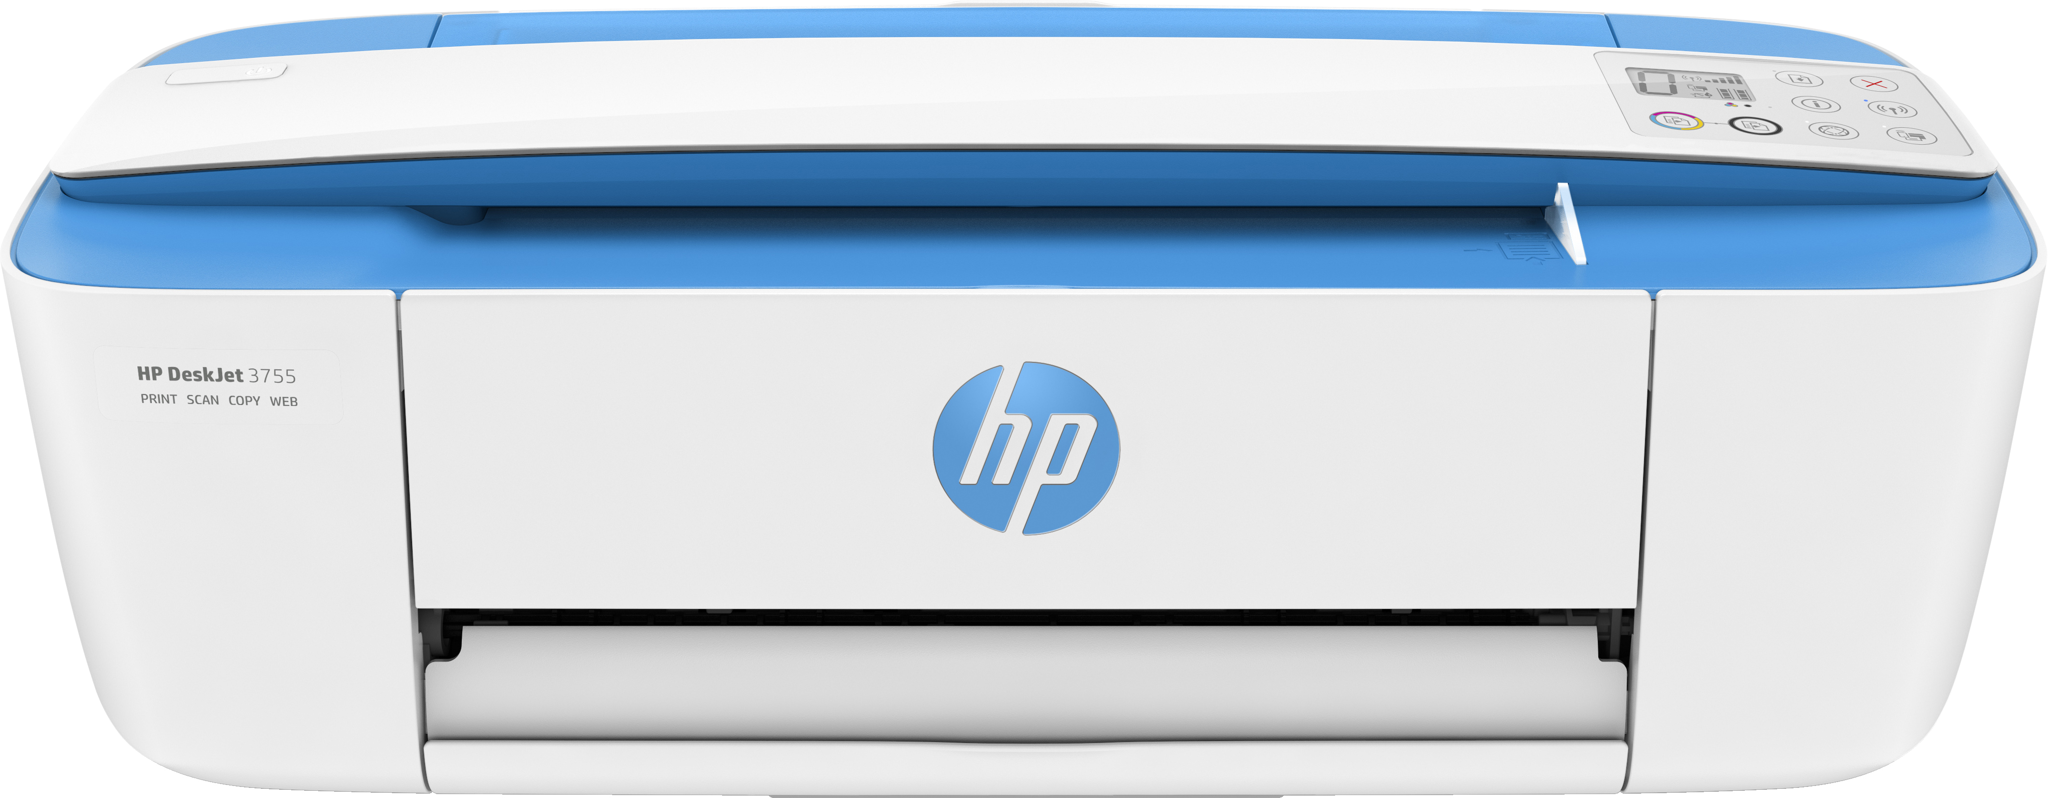 Bild von HP DeskJet 3750 All-in-One-Drucker - Zu Hause - Drucken - Kopieren - Scannen - Wireless - Scannen an E-Mail/PDF; Beidseitiger Druck - Thermal Inkjet - Farbdruck - 1200 x 1200 DPI - A4 - Direktdruck - Weiß